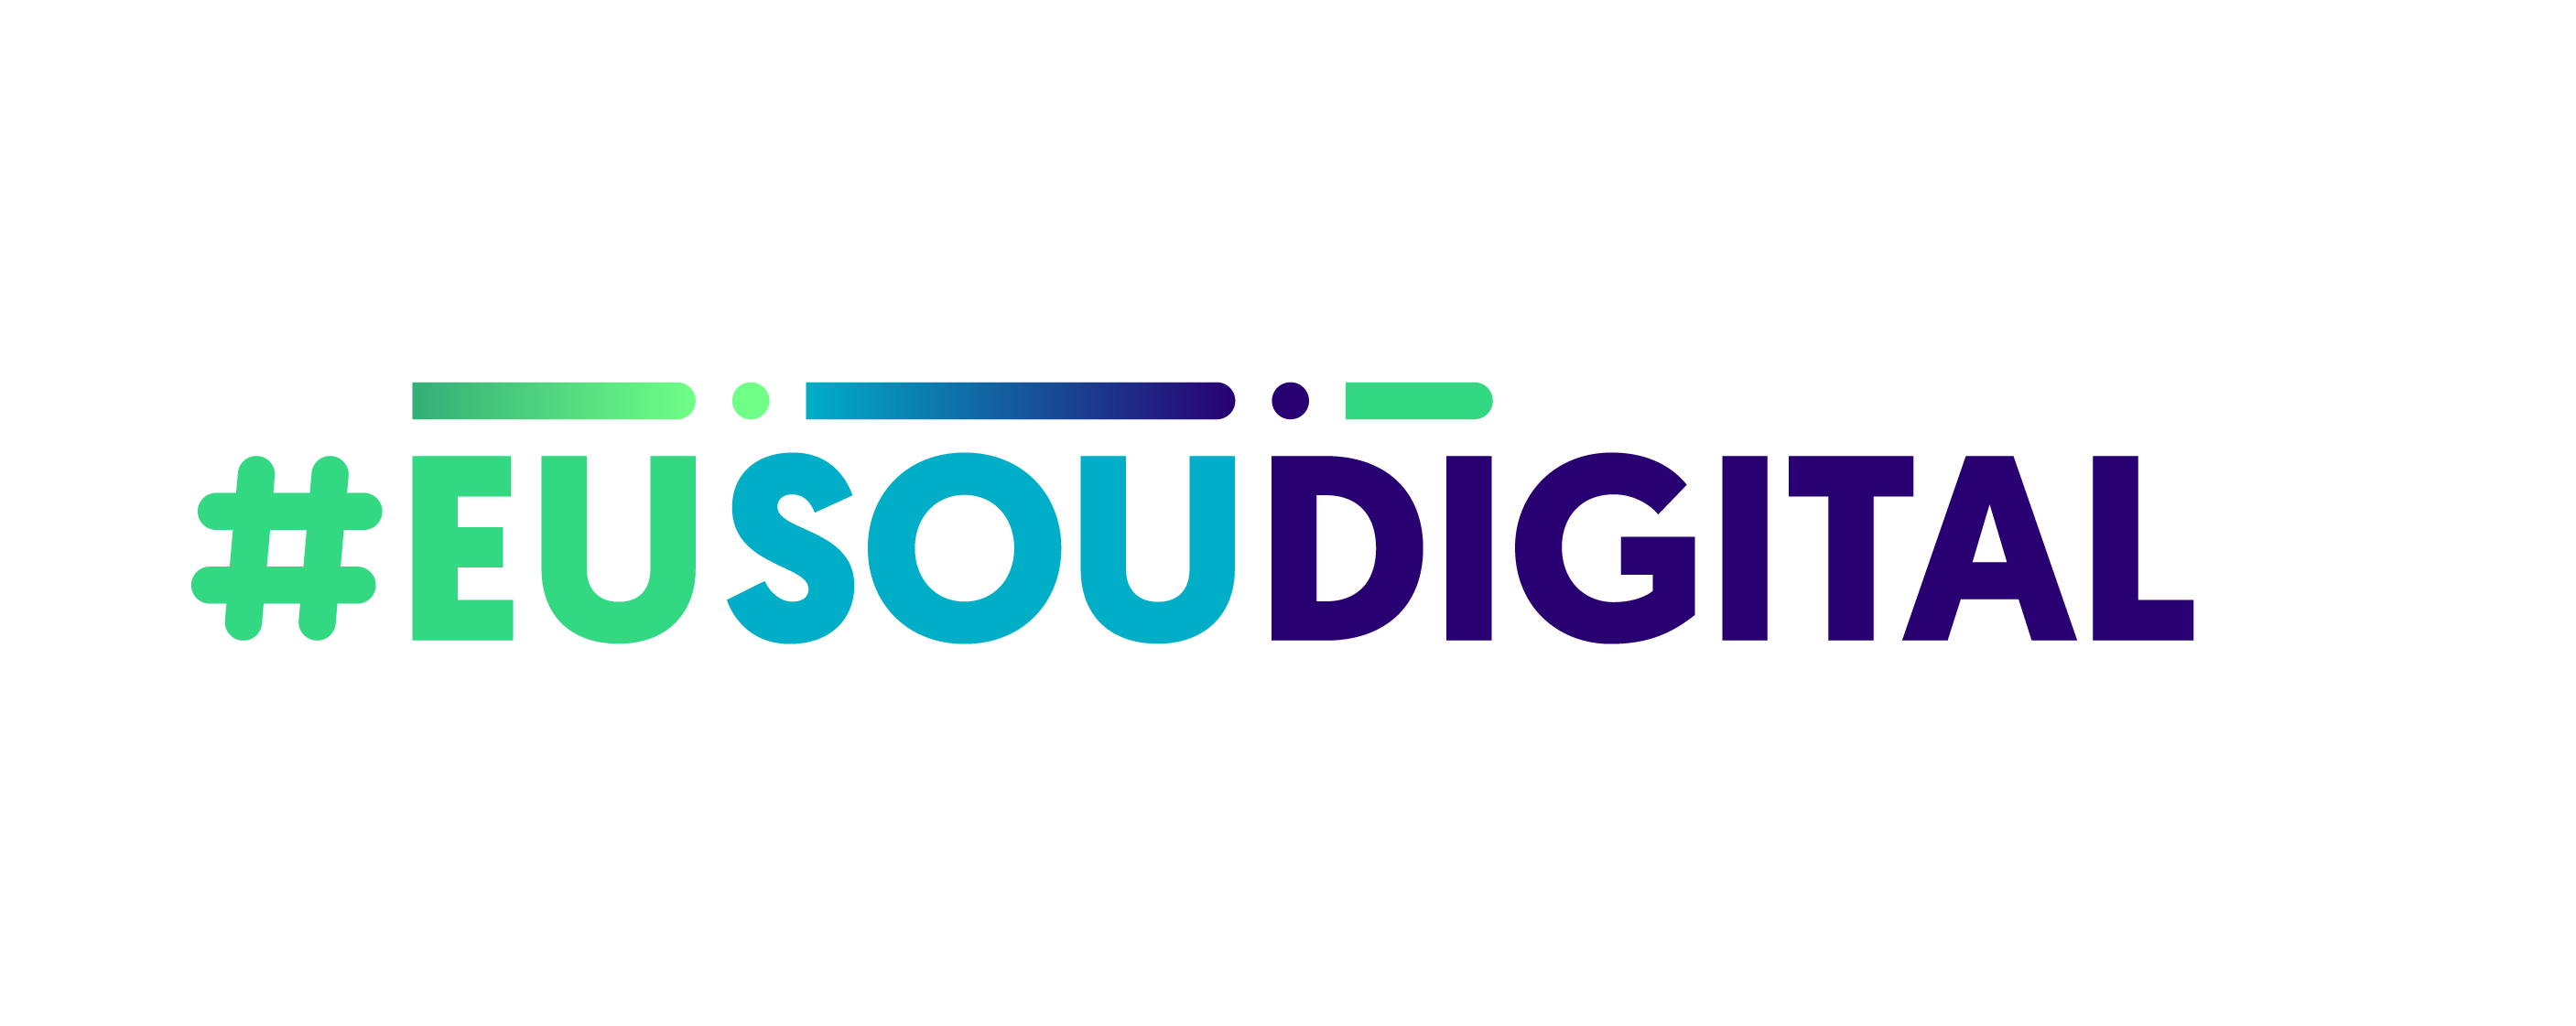 #EUSOUDIGITAL pretende sensibilizar e apoiar na promoção e desenvolvimento da inclusão digital em Portugal